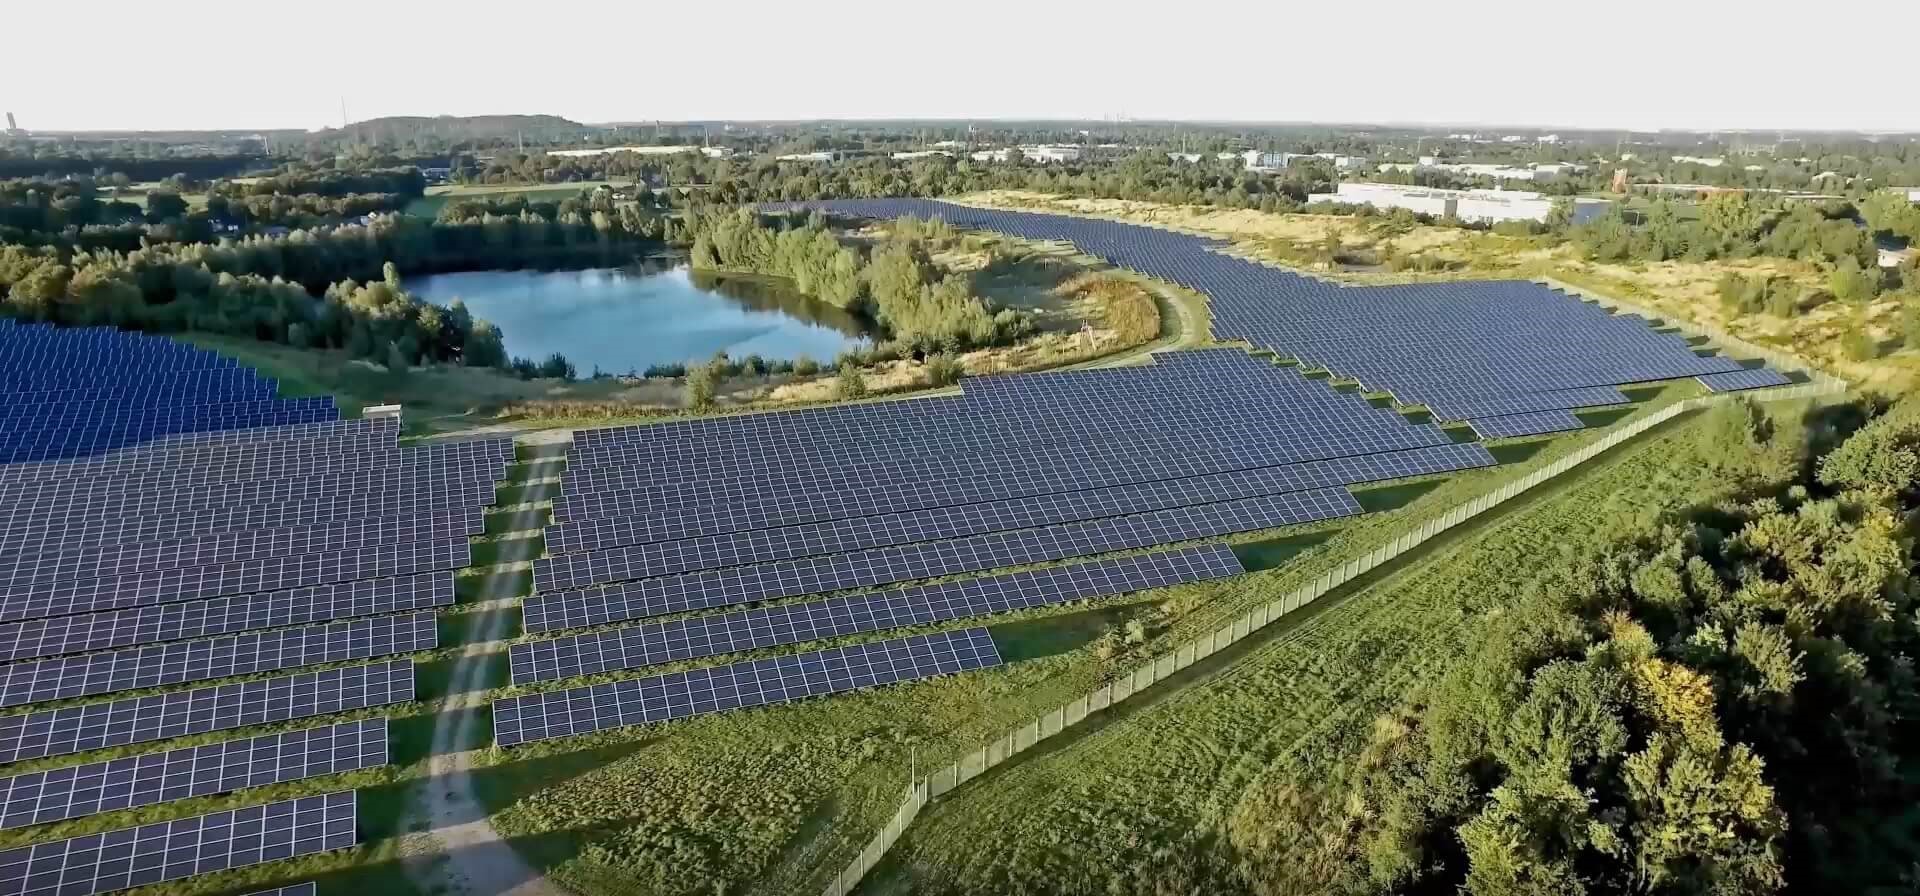 Luchtbeeld van een veld vol met zonnepanelen